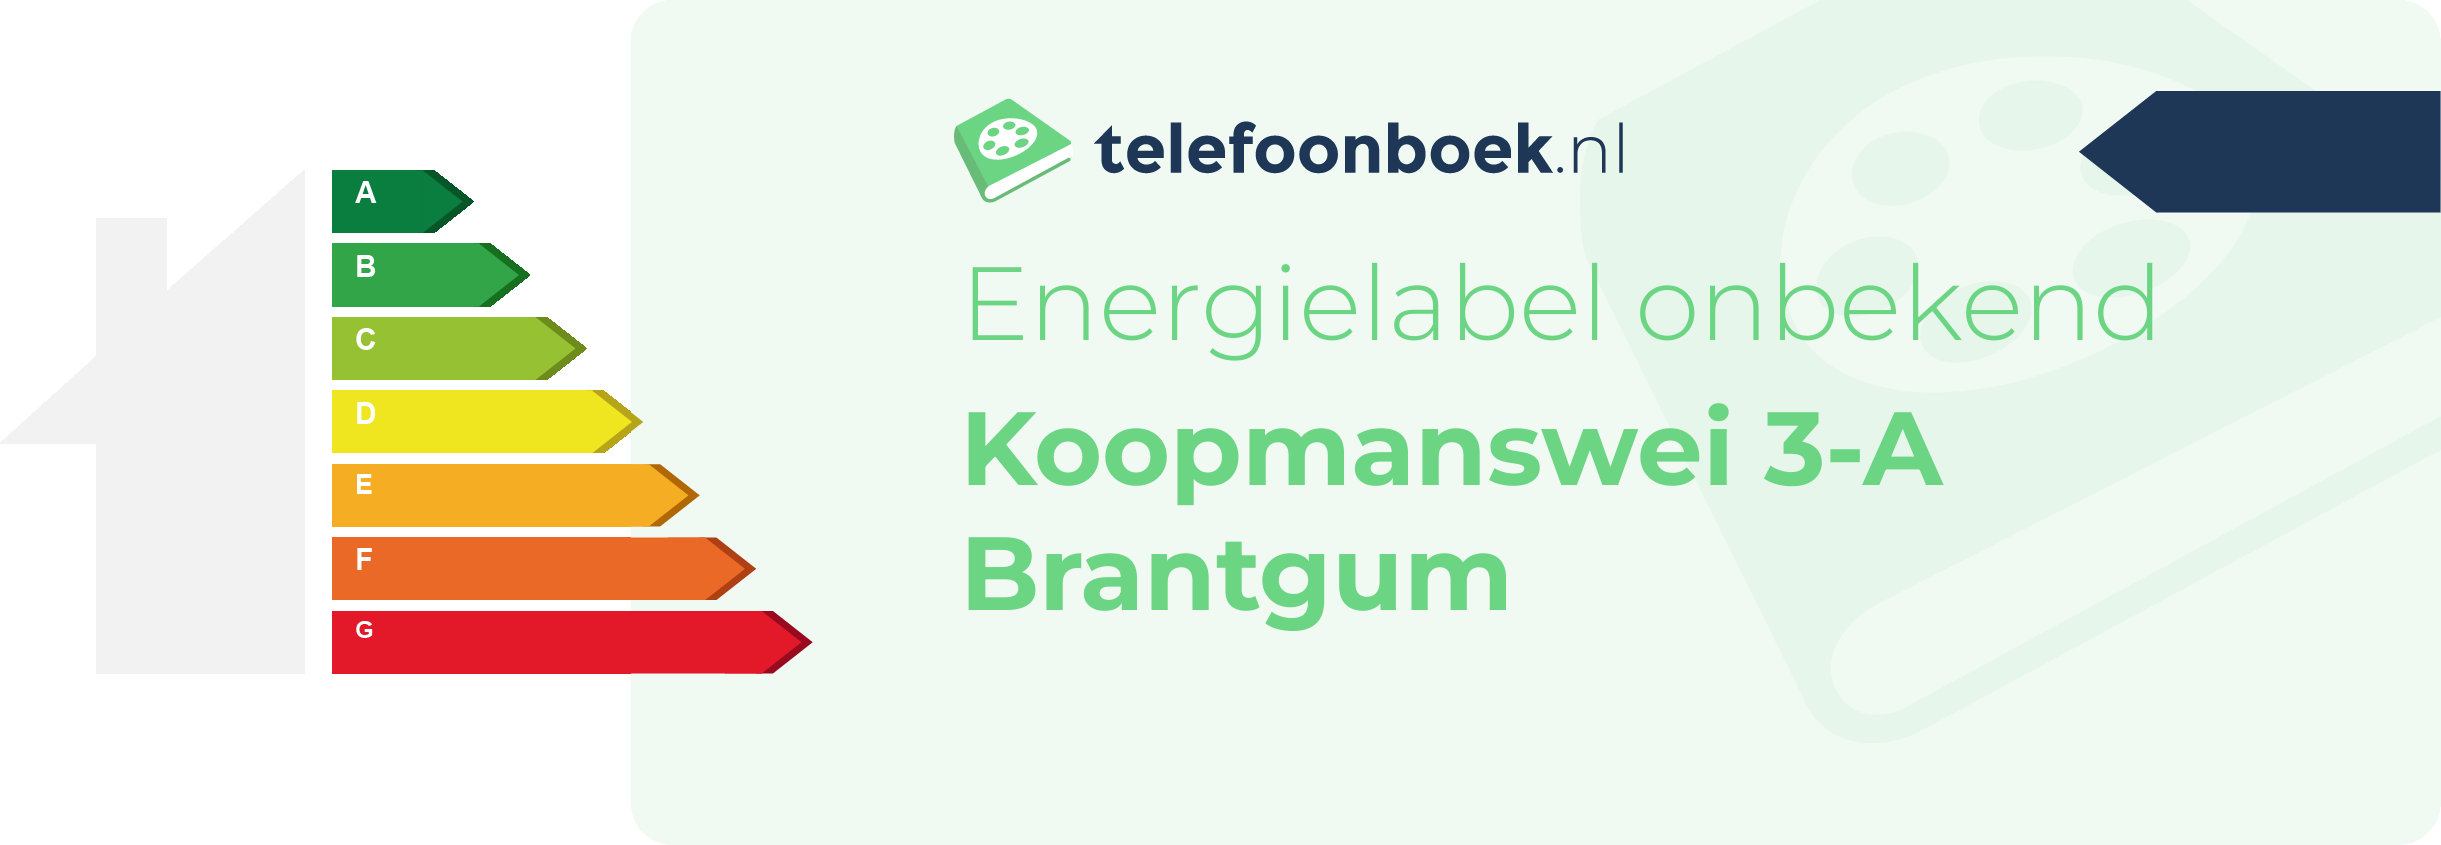 Energielabel Koopmanswei 3-A Brantgum